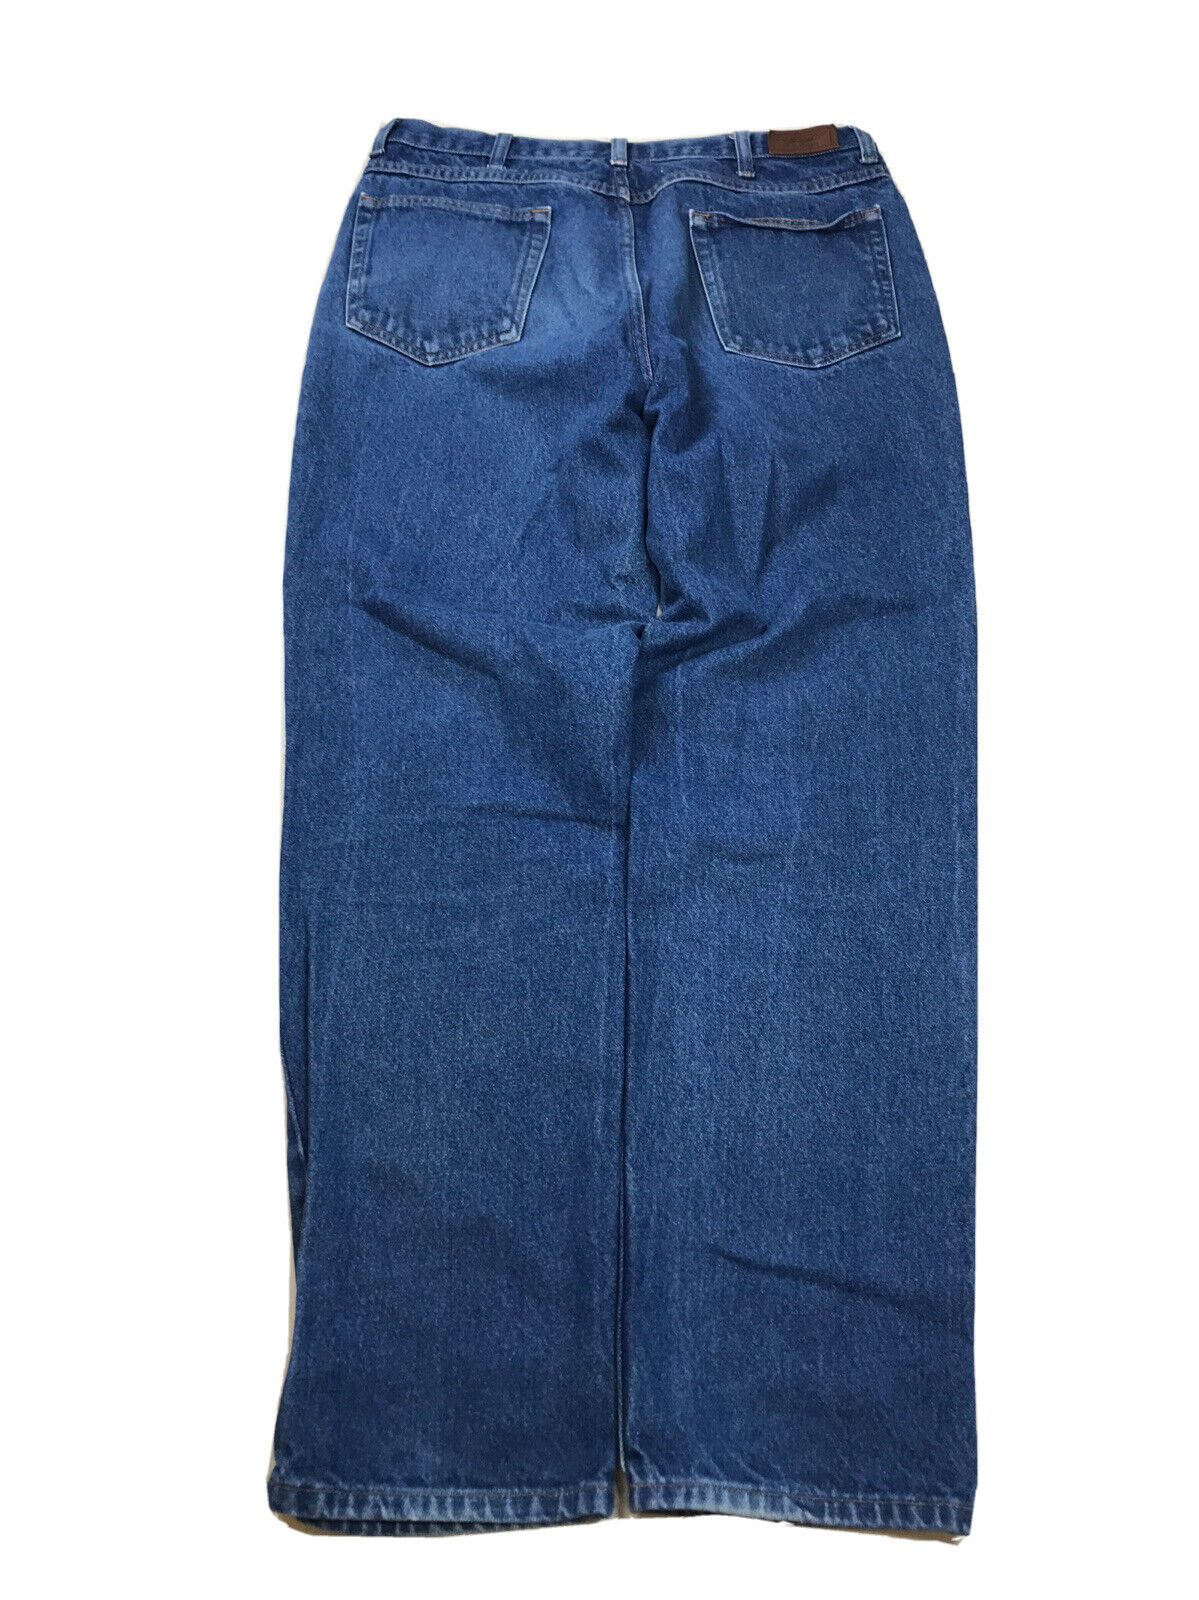 LL Bean Men's Dark Wash Blue Classic Fit Straight Leg Jeans - 35x32